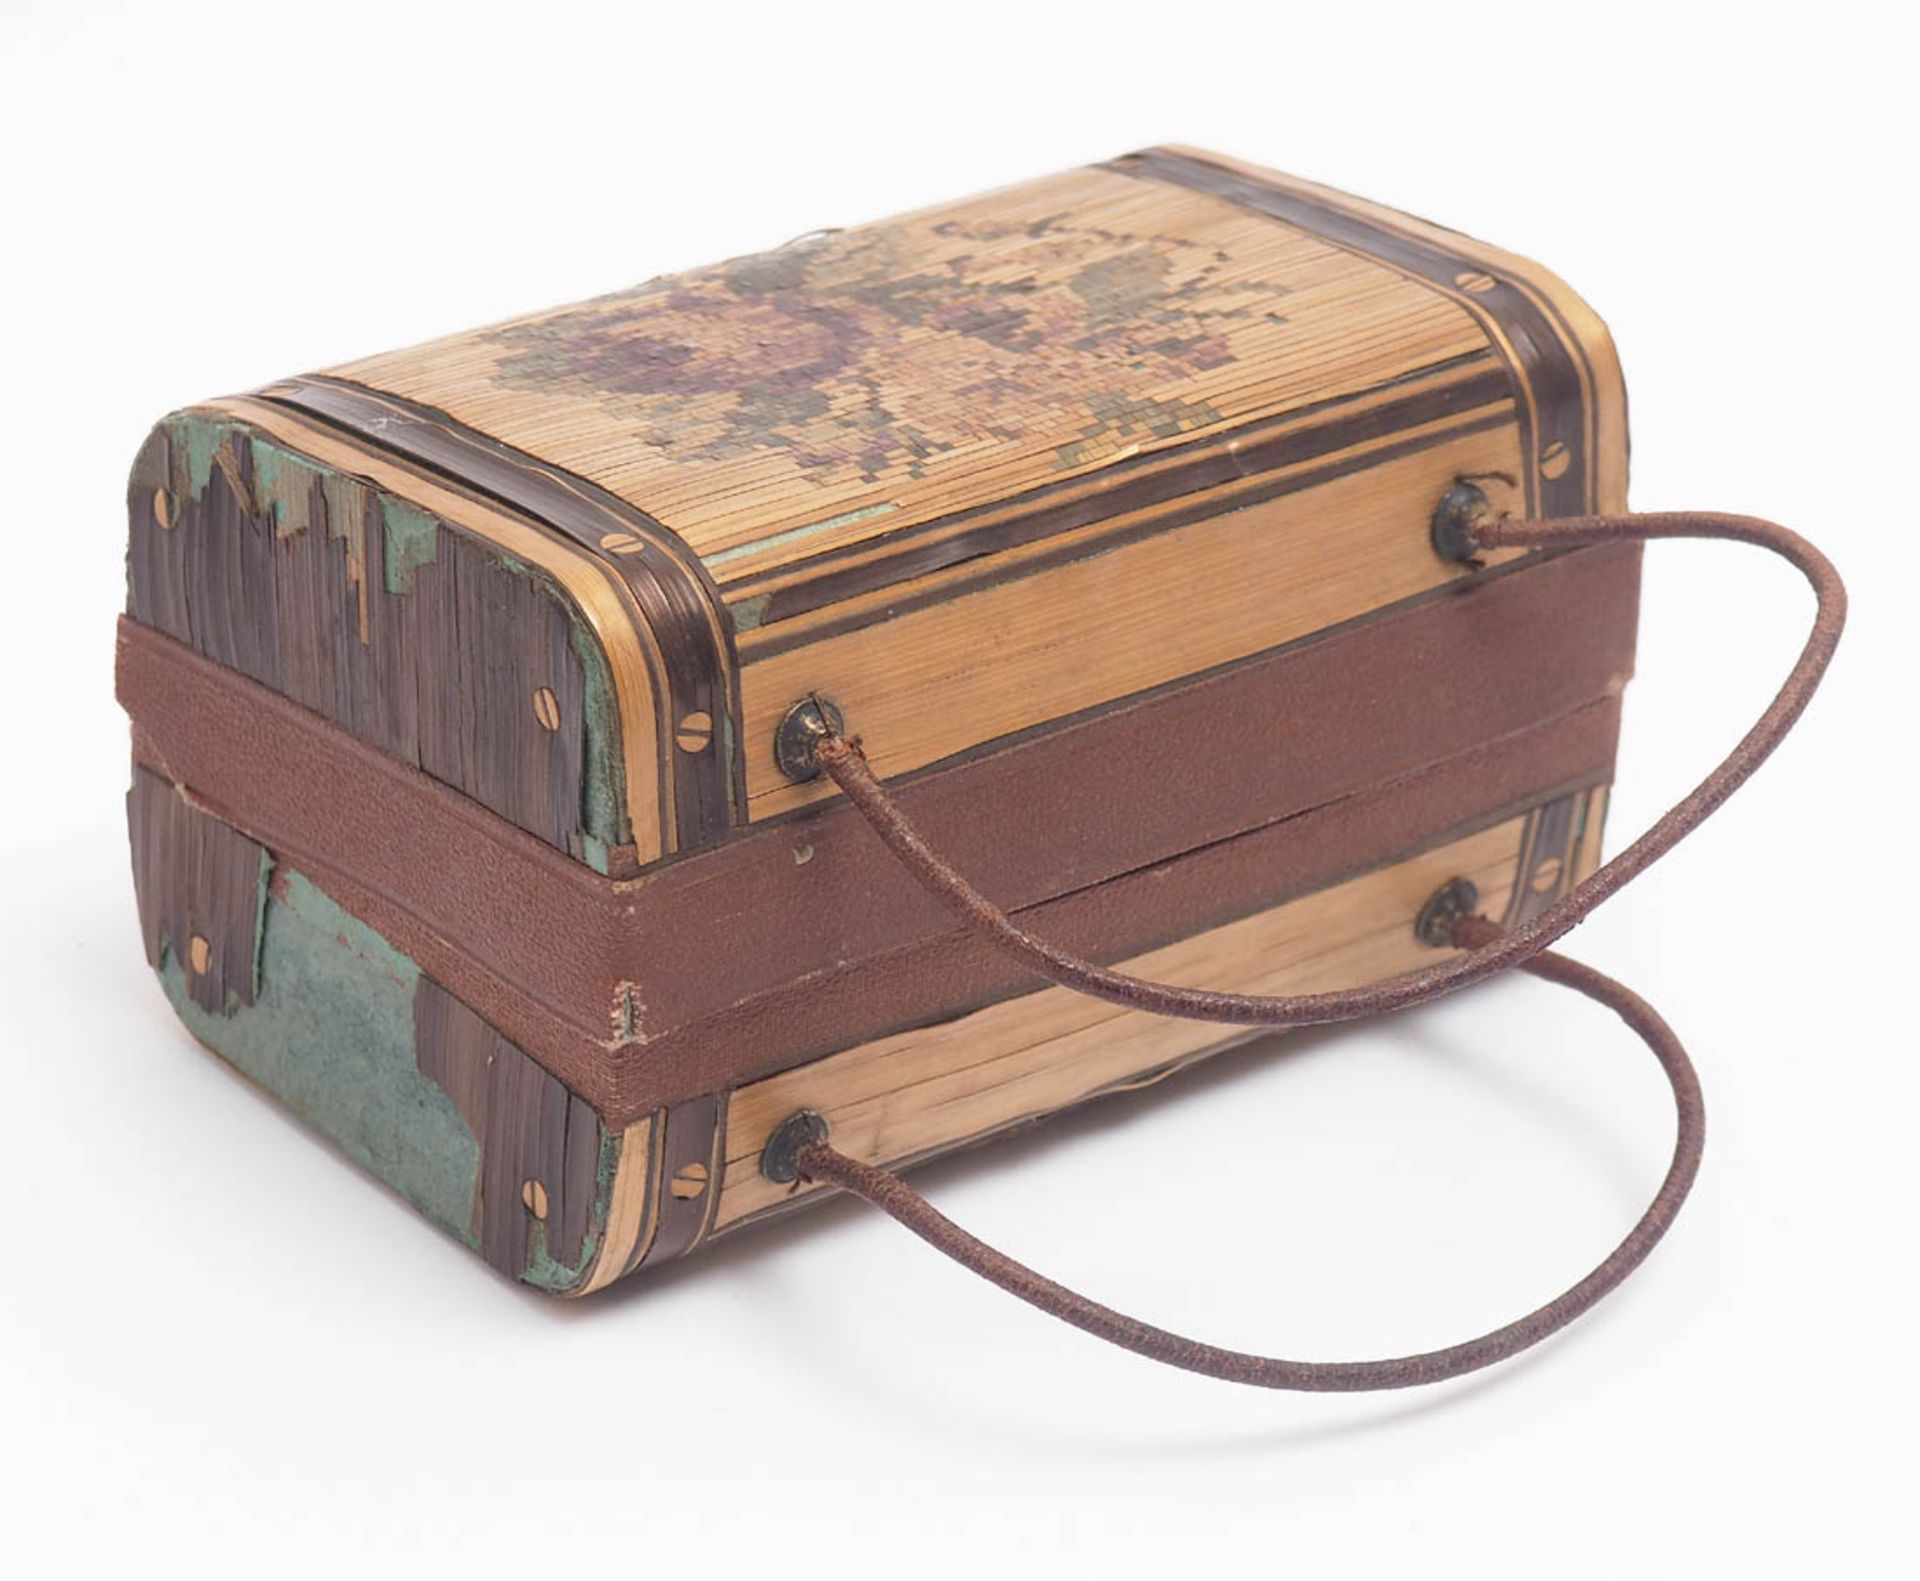 Kästchen, 19.Jhdt. In Form einere Reisetasche mit Tragbügeln. Karton mit gefärbten Strohintarsien.